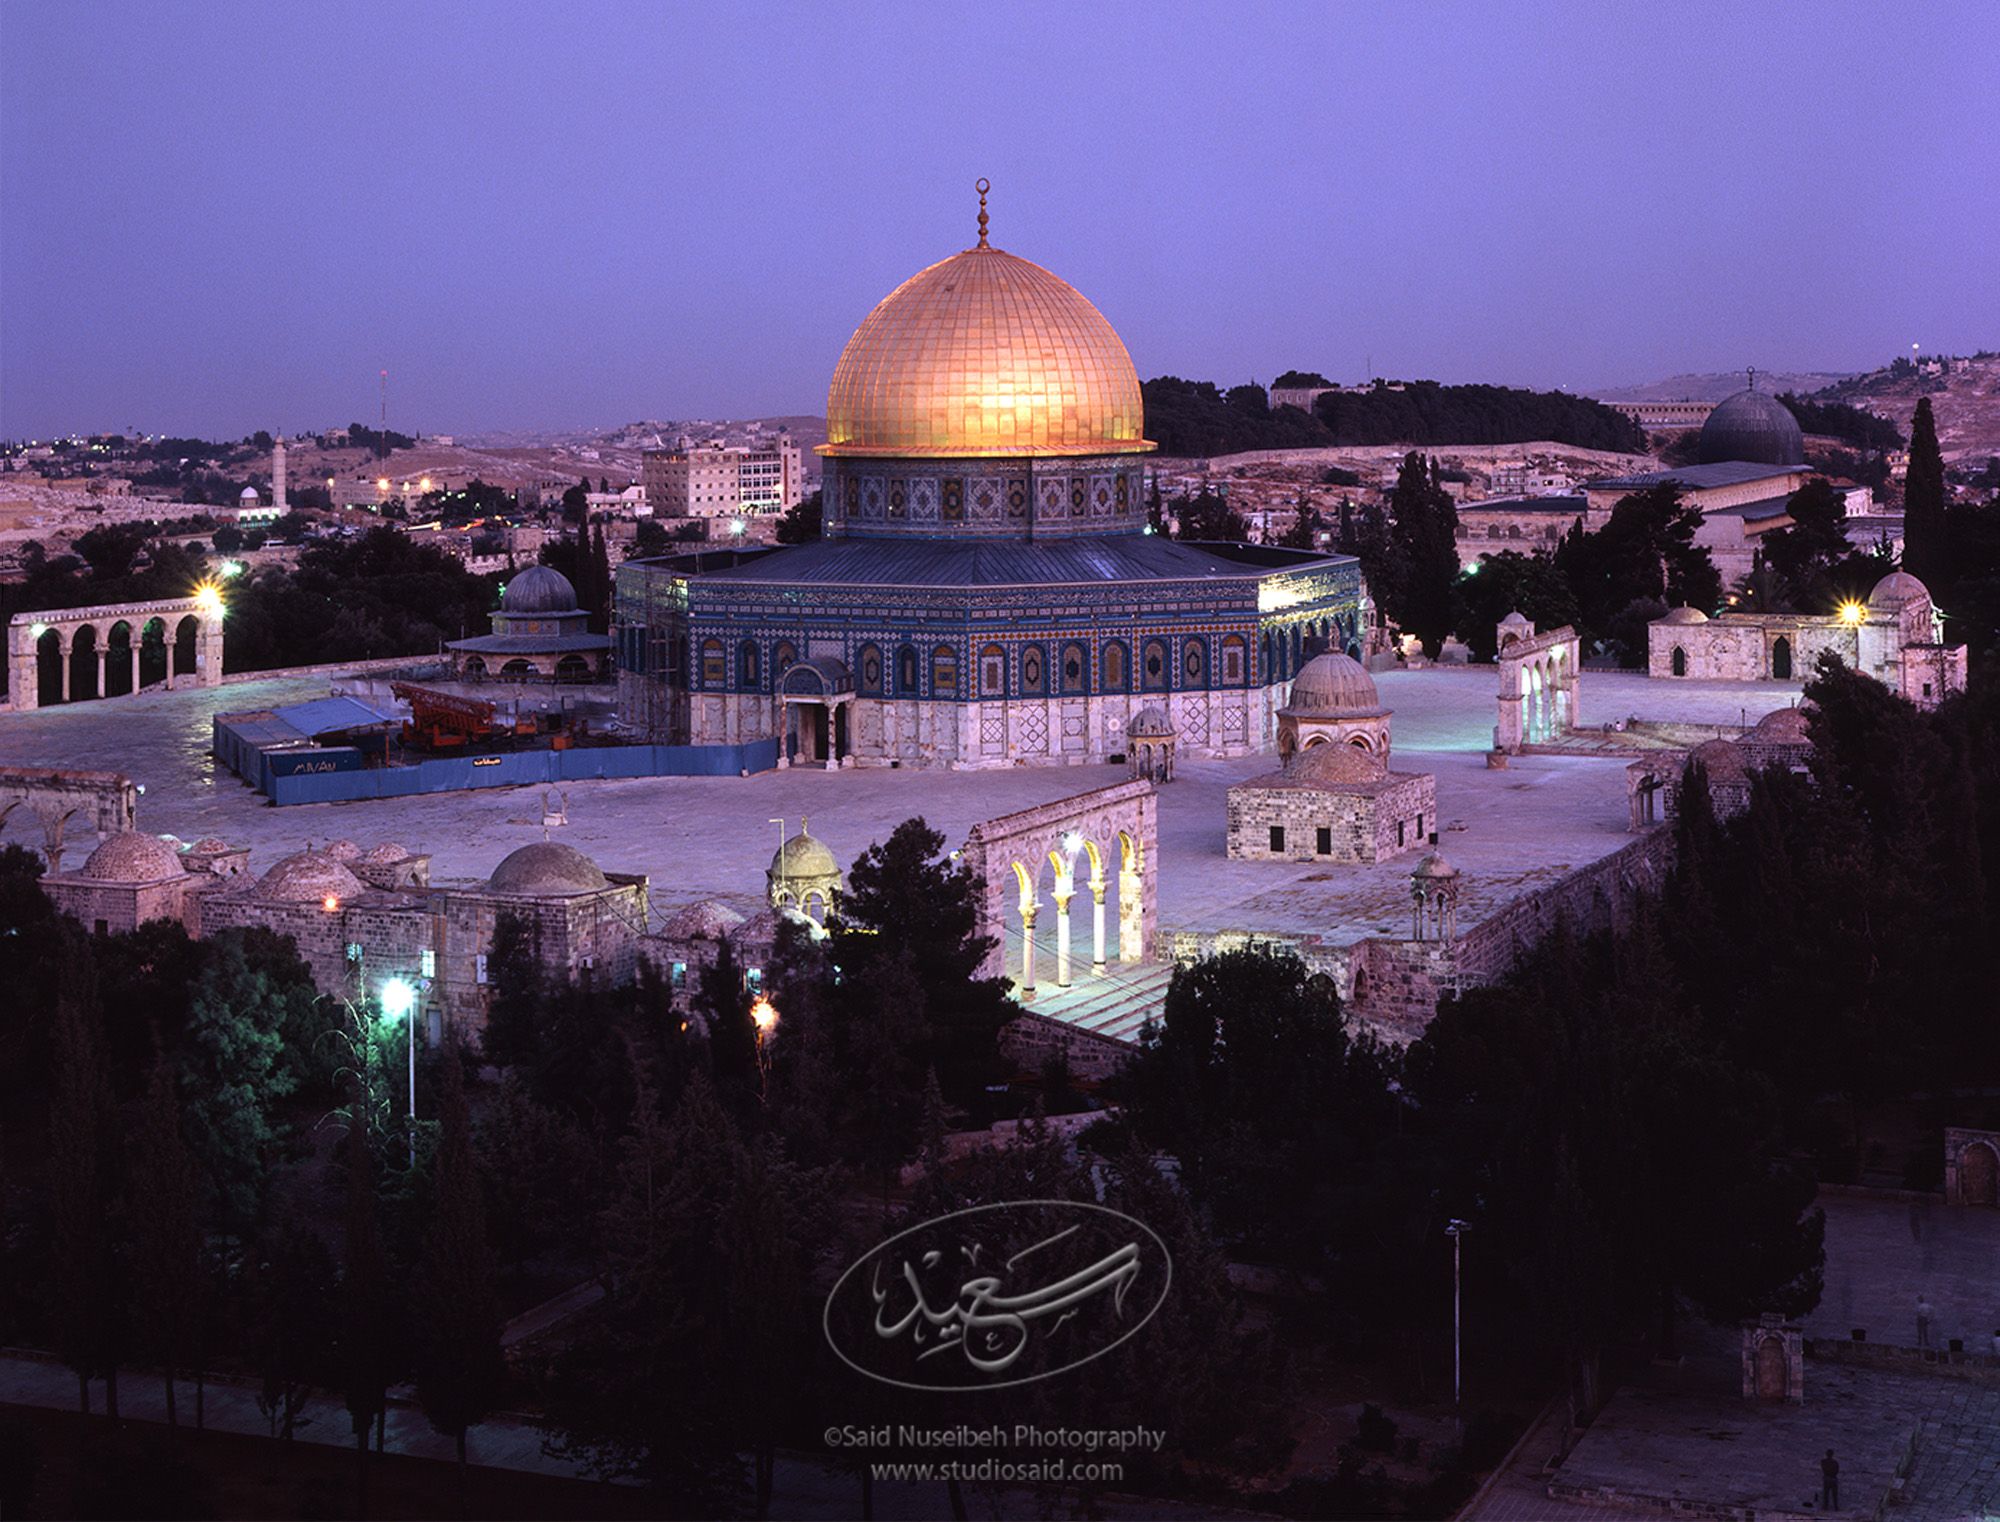 Toward the <i>Qubbat al-Sakhra</i> / Dome of the Rock and <i>Masjid al-Aqsa</i>, Old City Jerusalem <i>alQuds</i>.